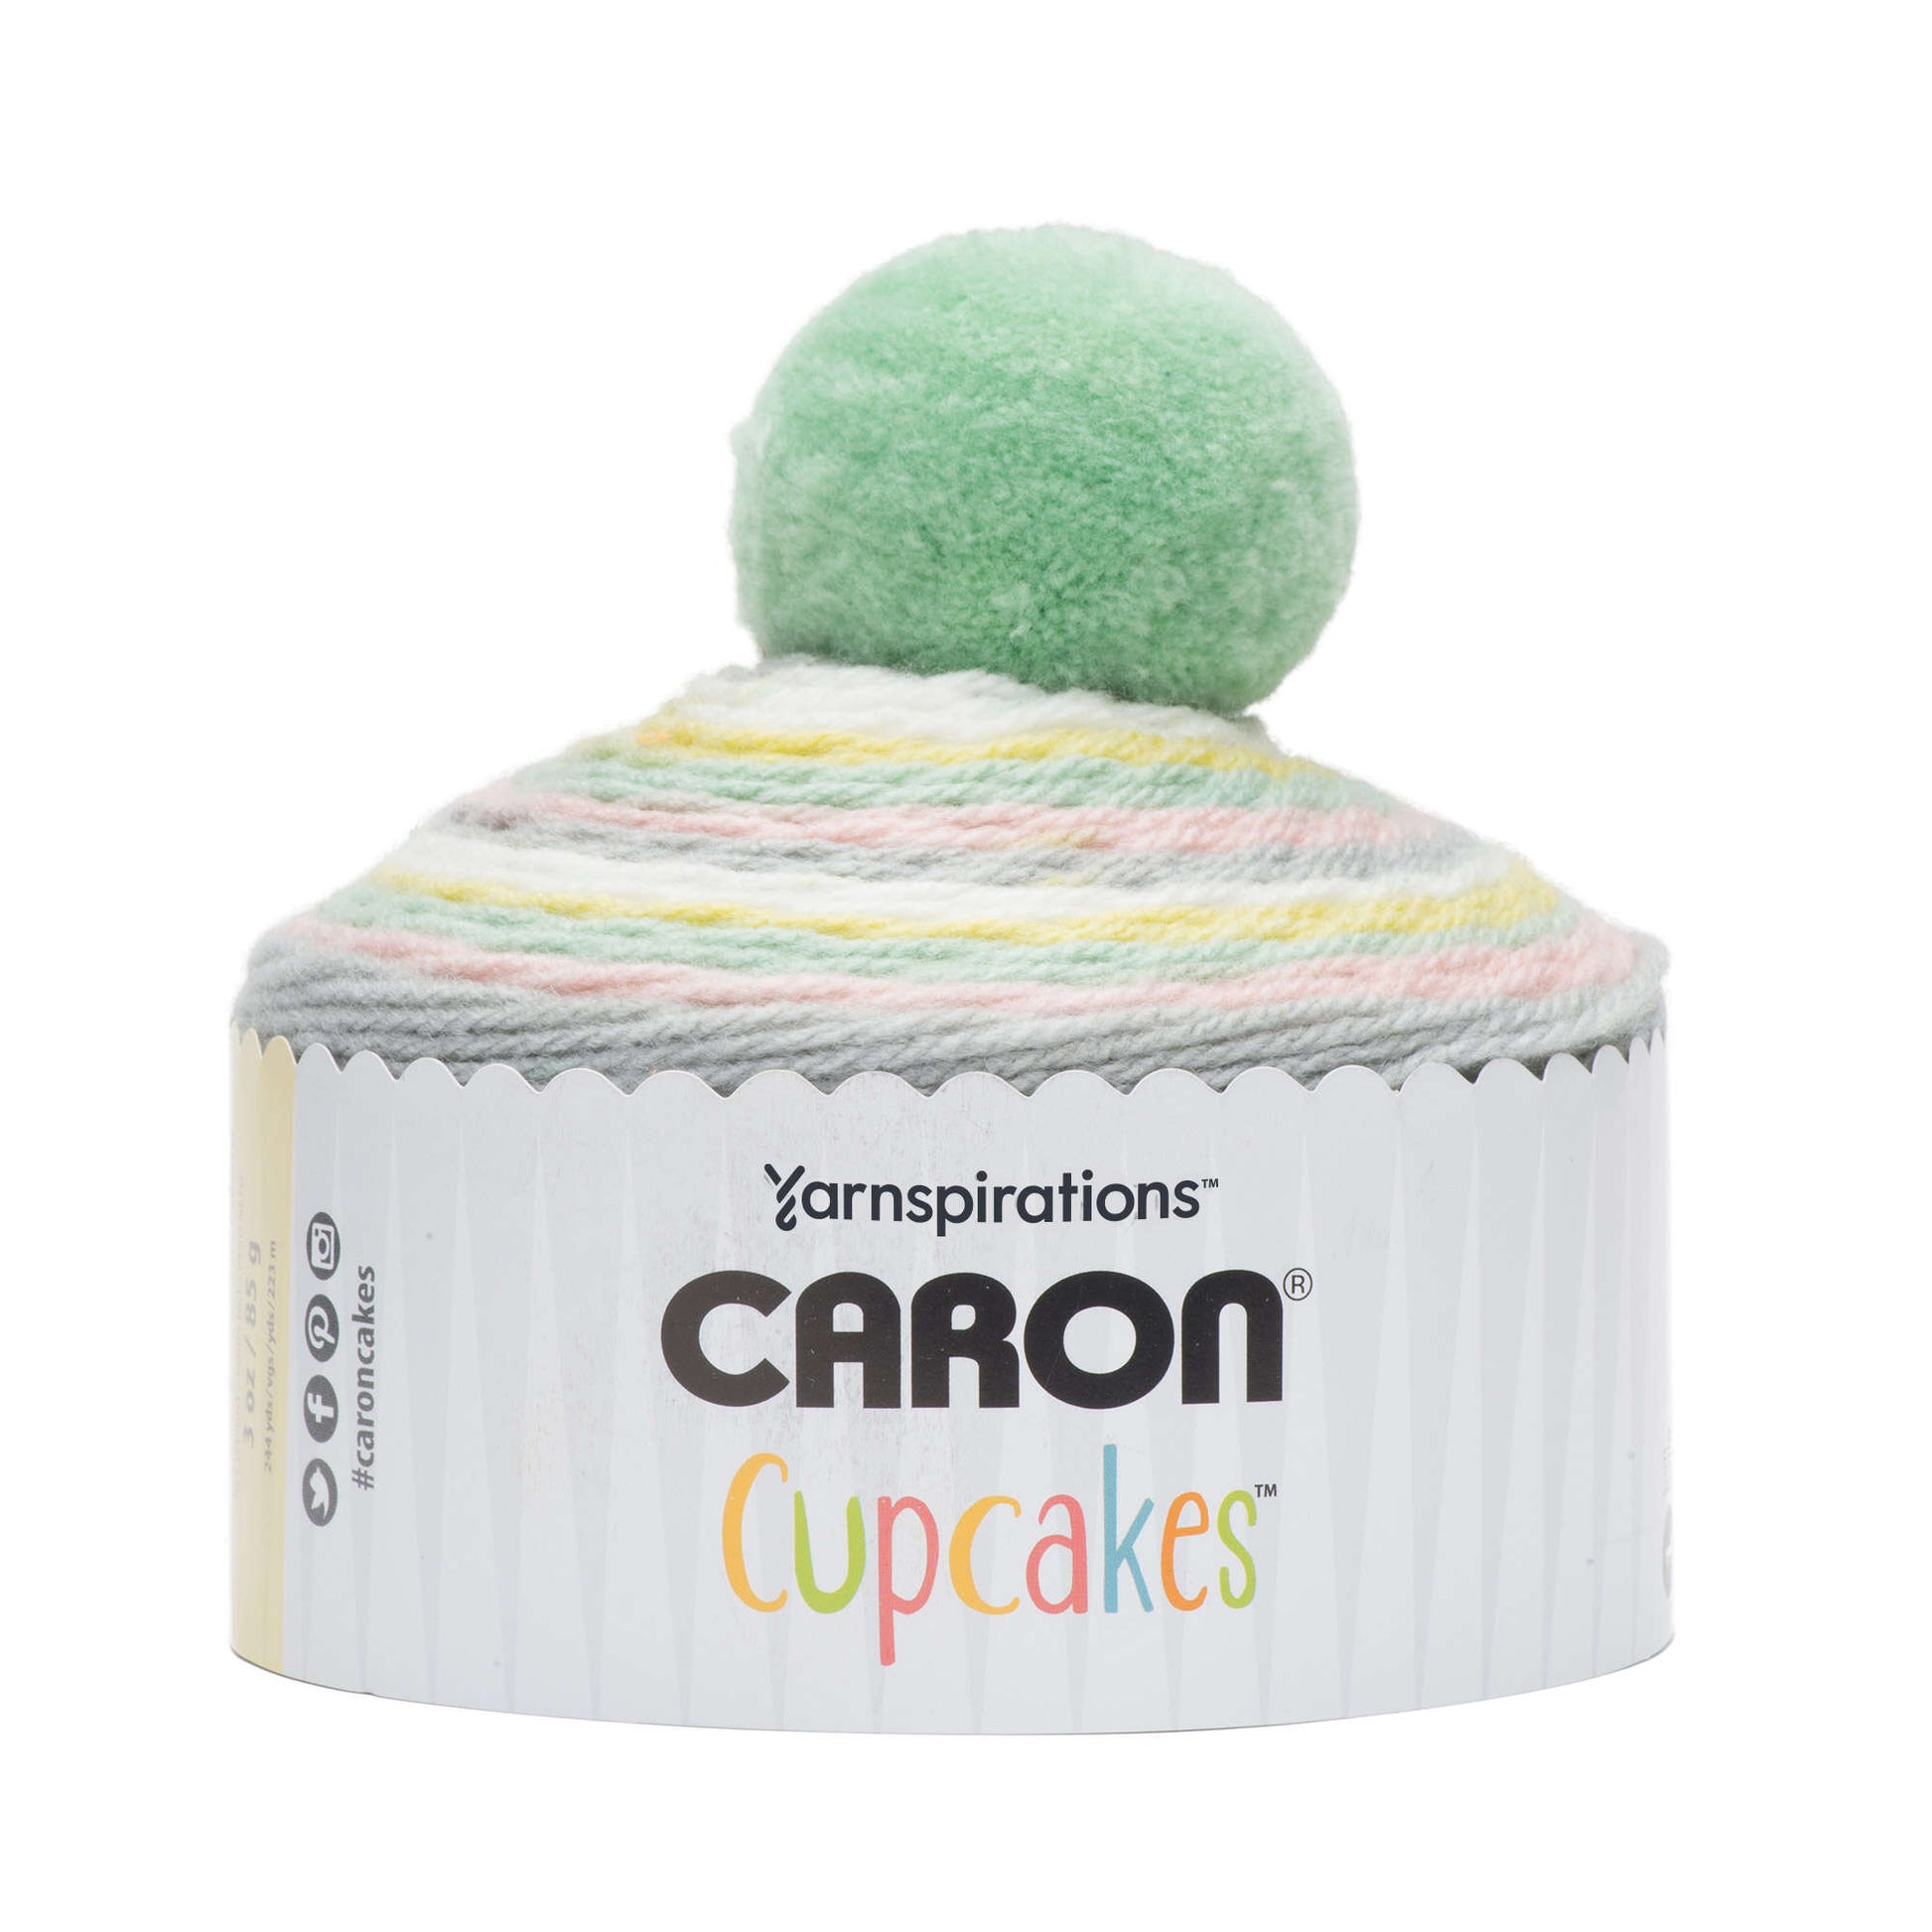 Caron Cupcakes Yarn - Discontinued Shades